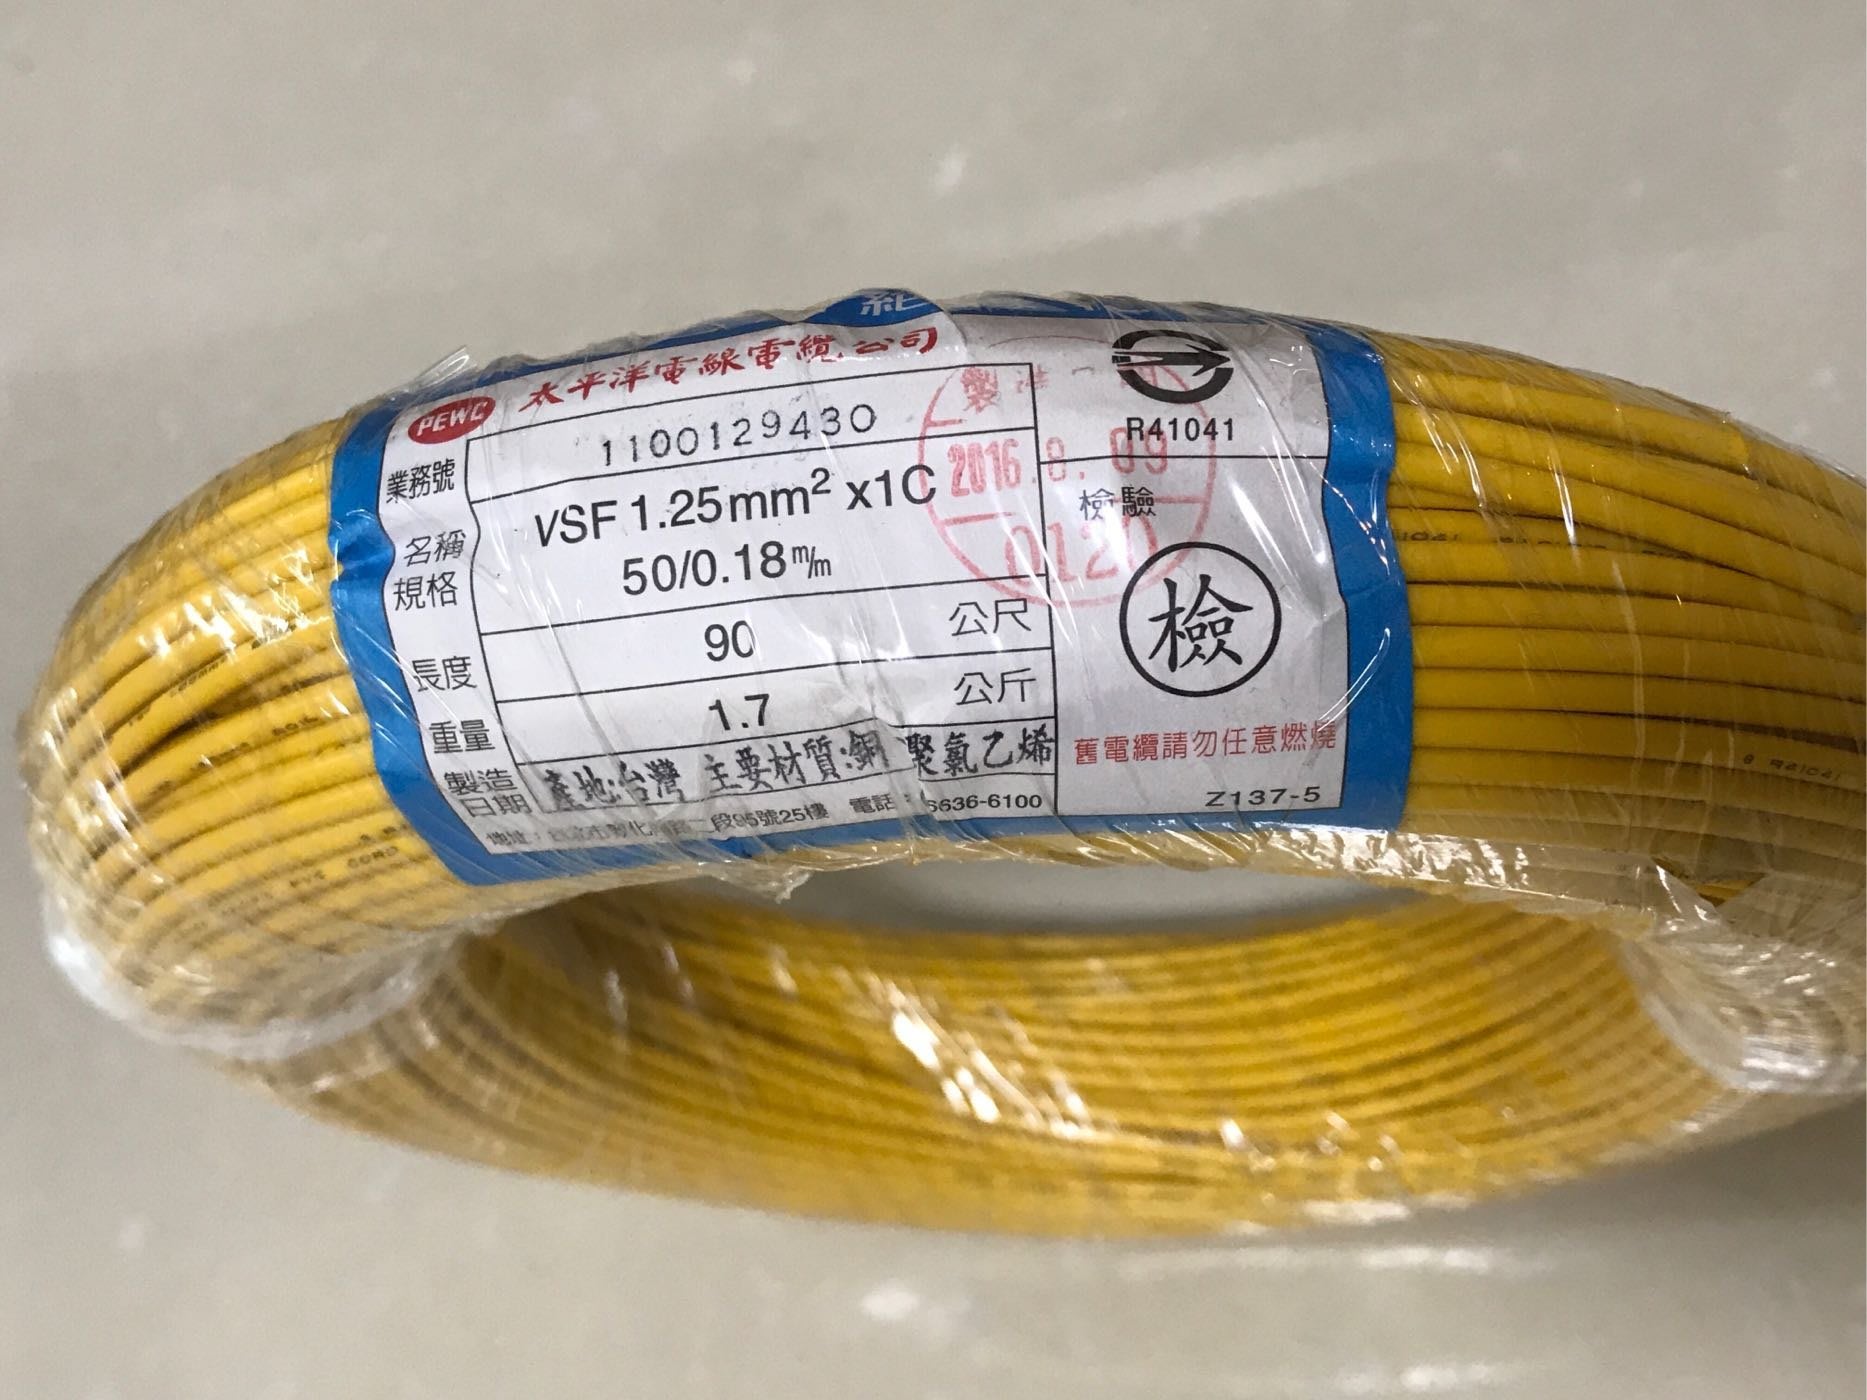 太平洋電纜 黃色單芯線 VSF 1.25mm X 1C. 90公尺。控制線 花線。可自行修改合併運費 | Yahoo奇摩拍賣